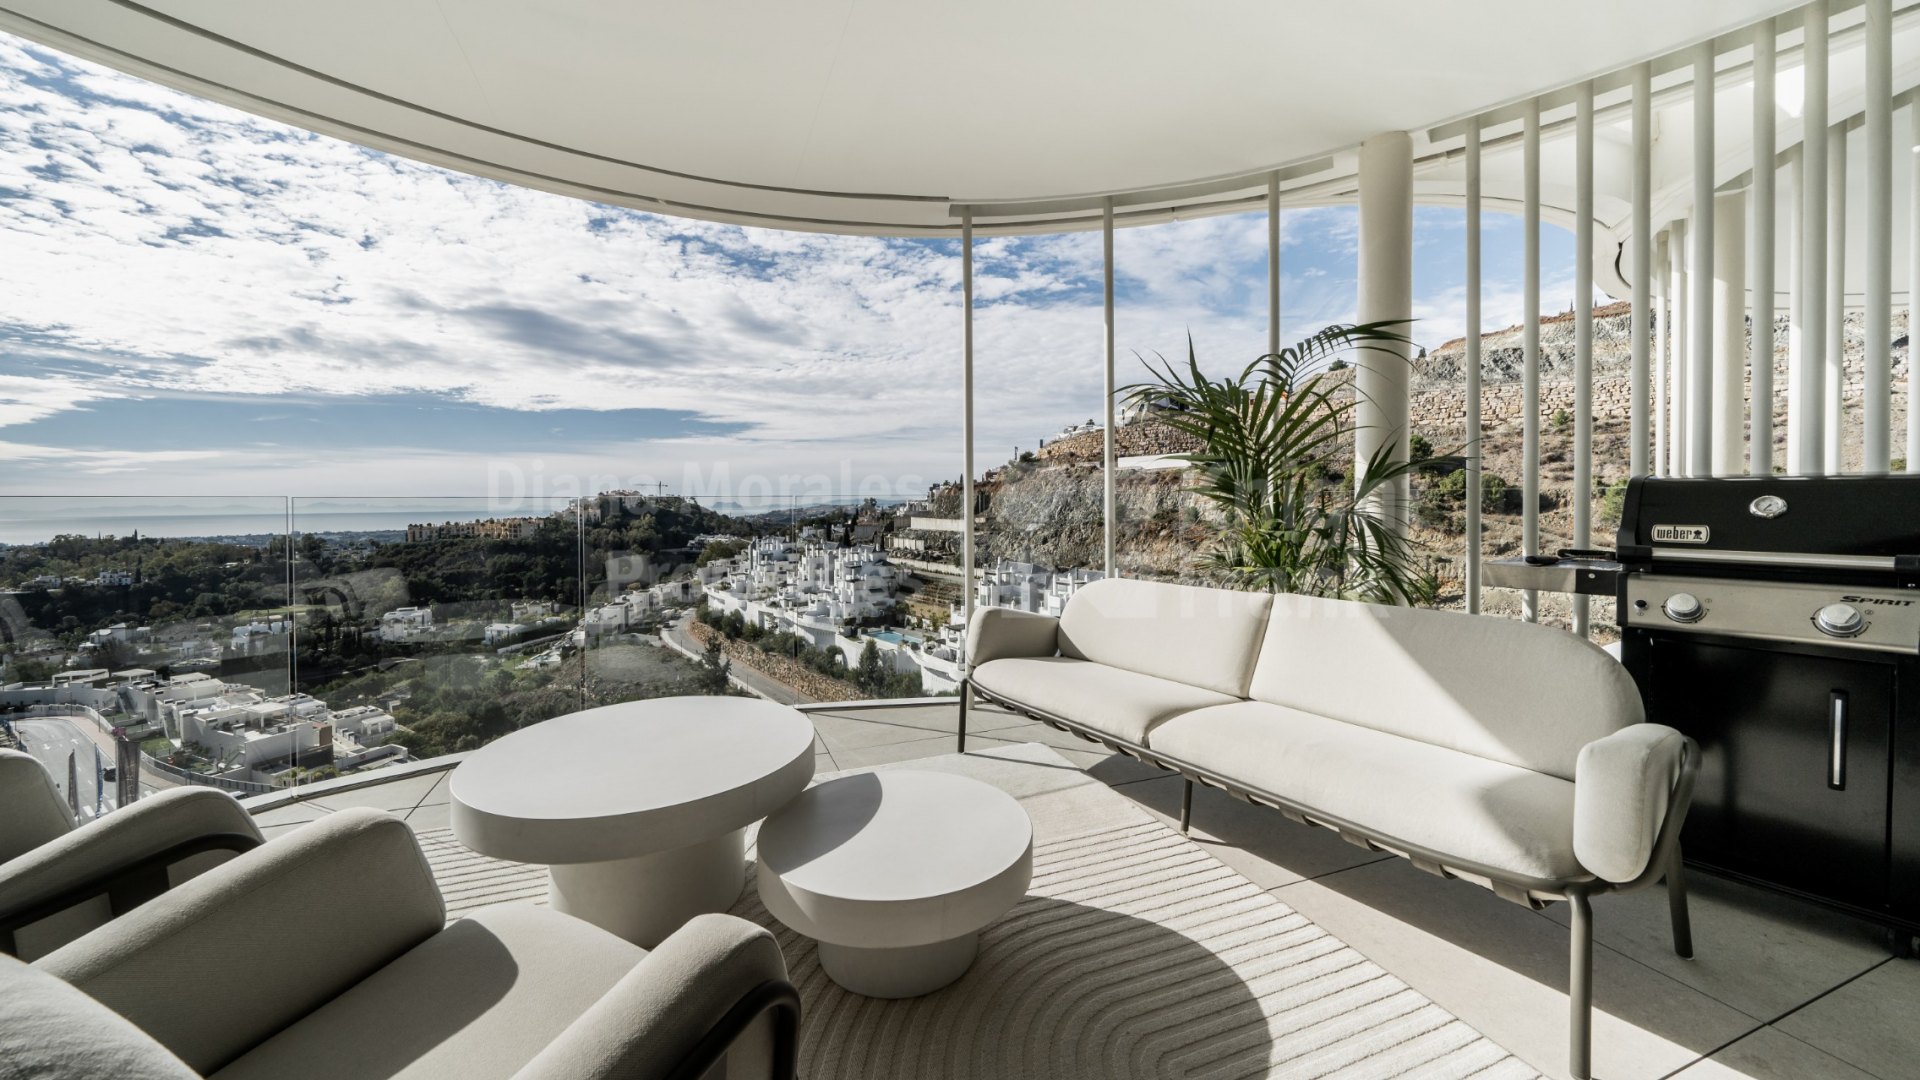 The View Marbella, Moderno apartamento en comunidad cerrada y vistas panorámicas